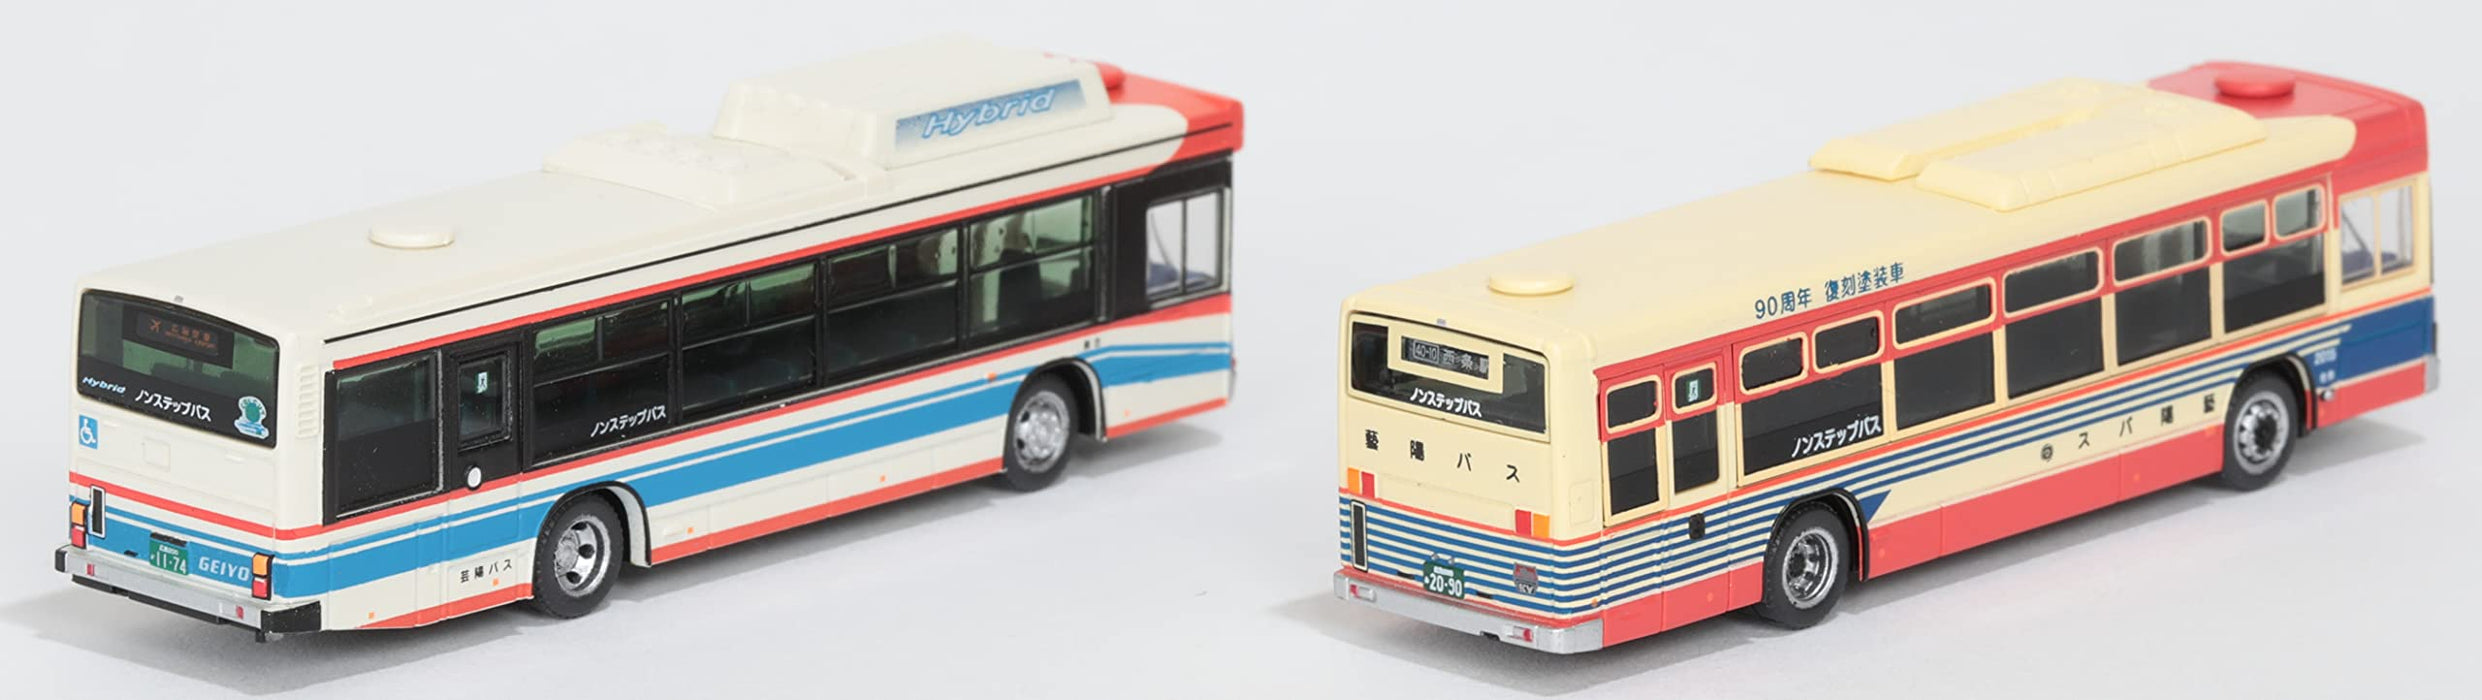 Tomytec Jubiläumsset mit 2 Geiyo-Bussen, Sammlung für Dioramen – limitierte Auflage, 315582